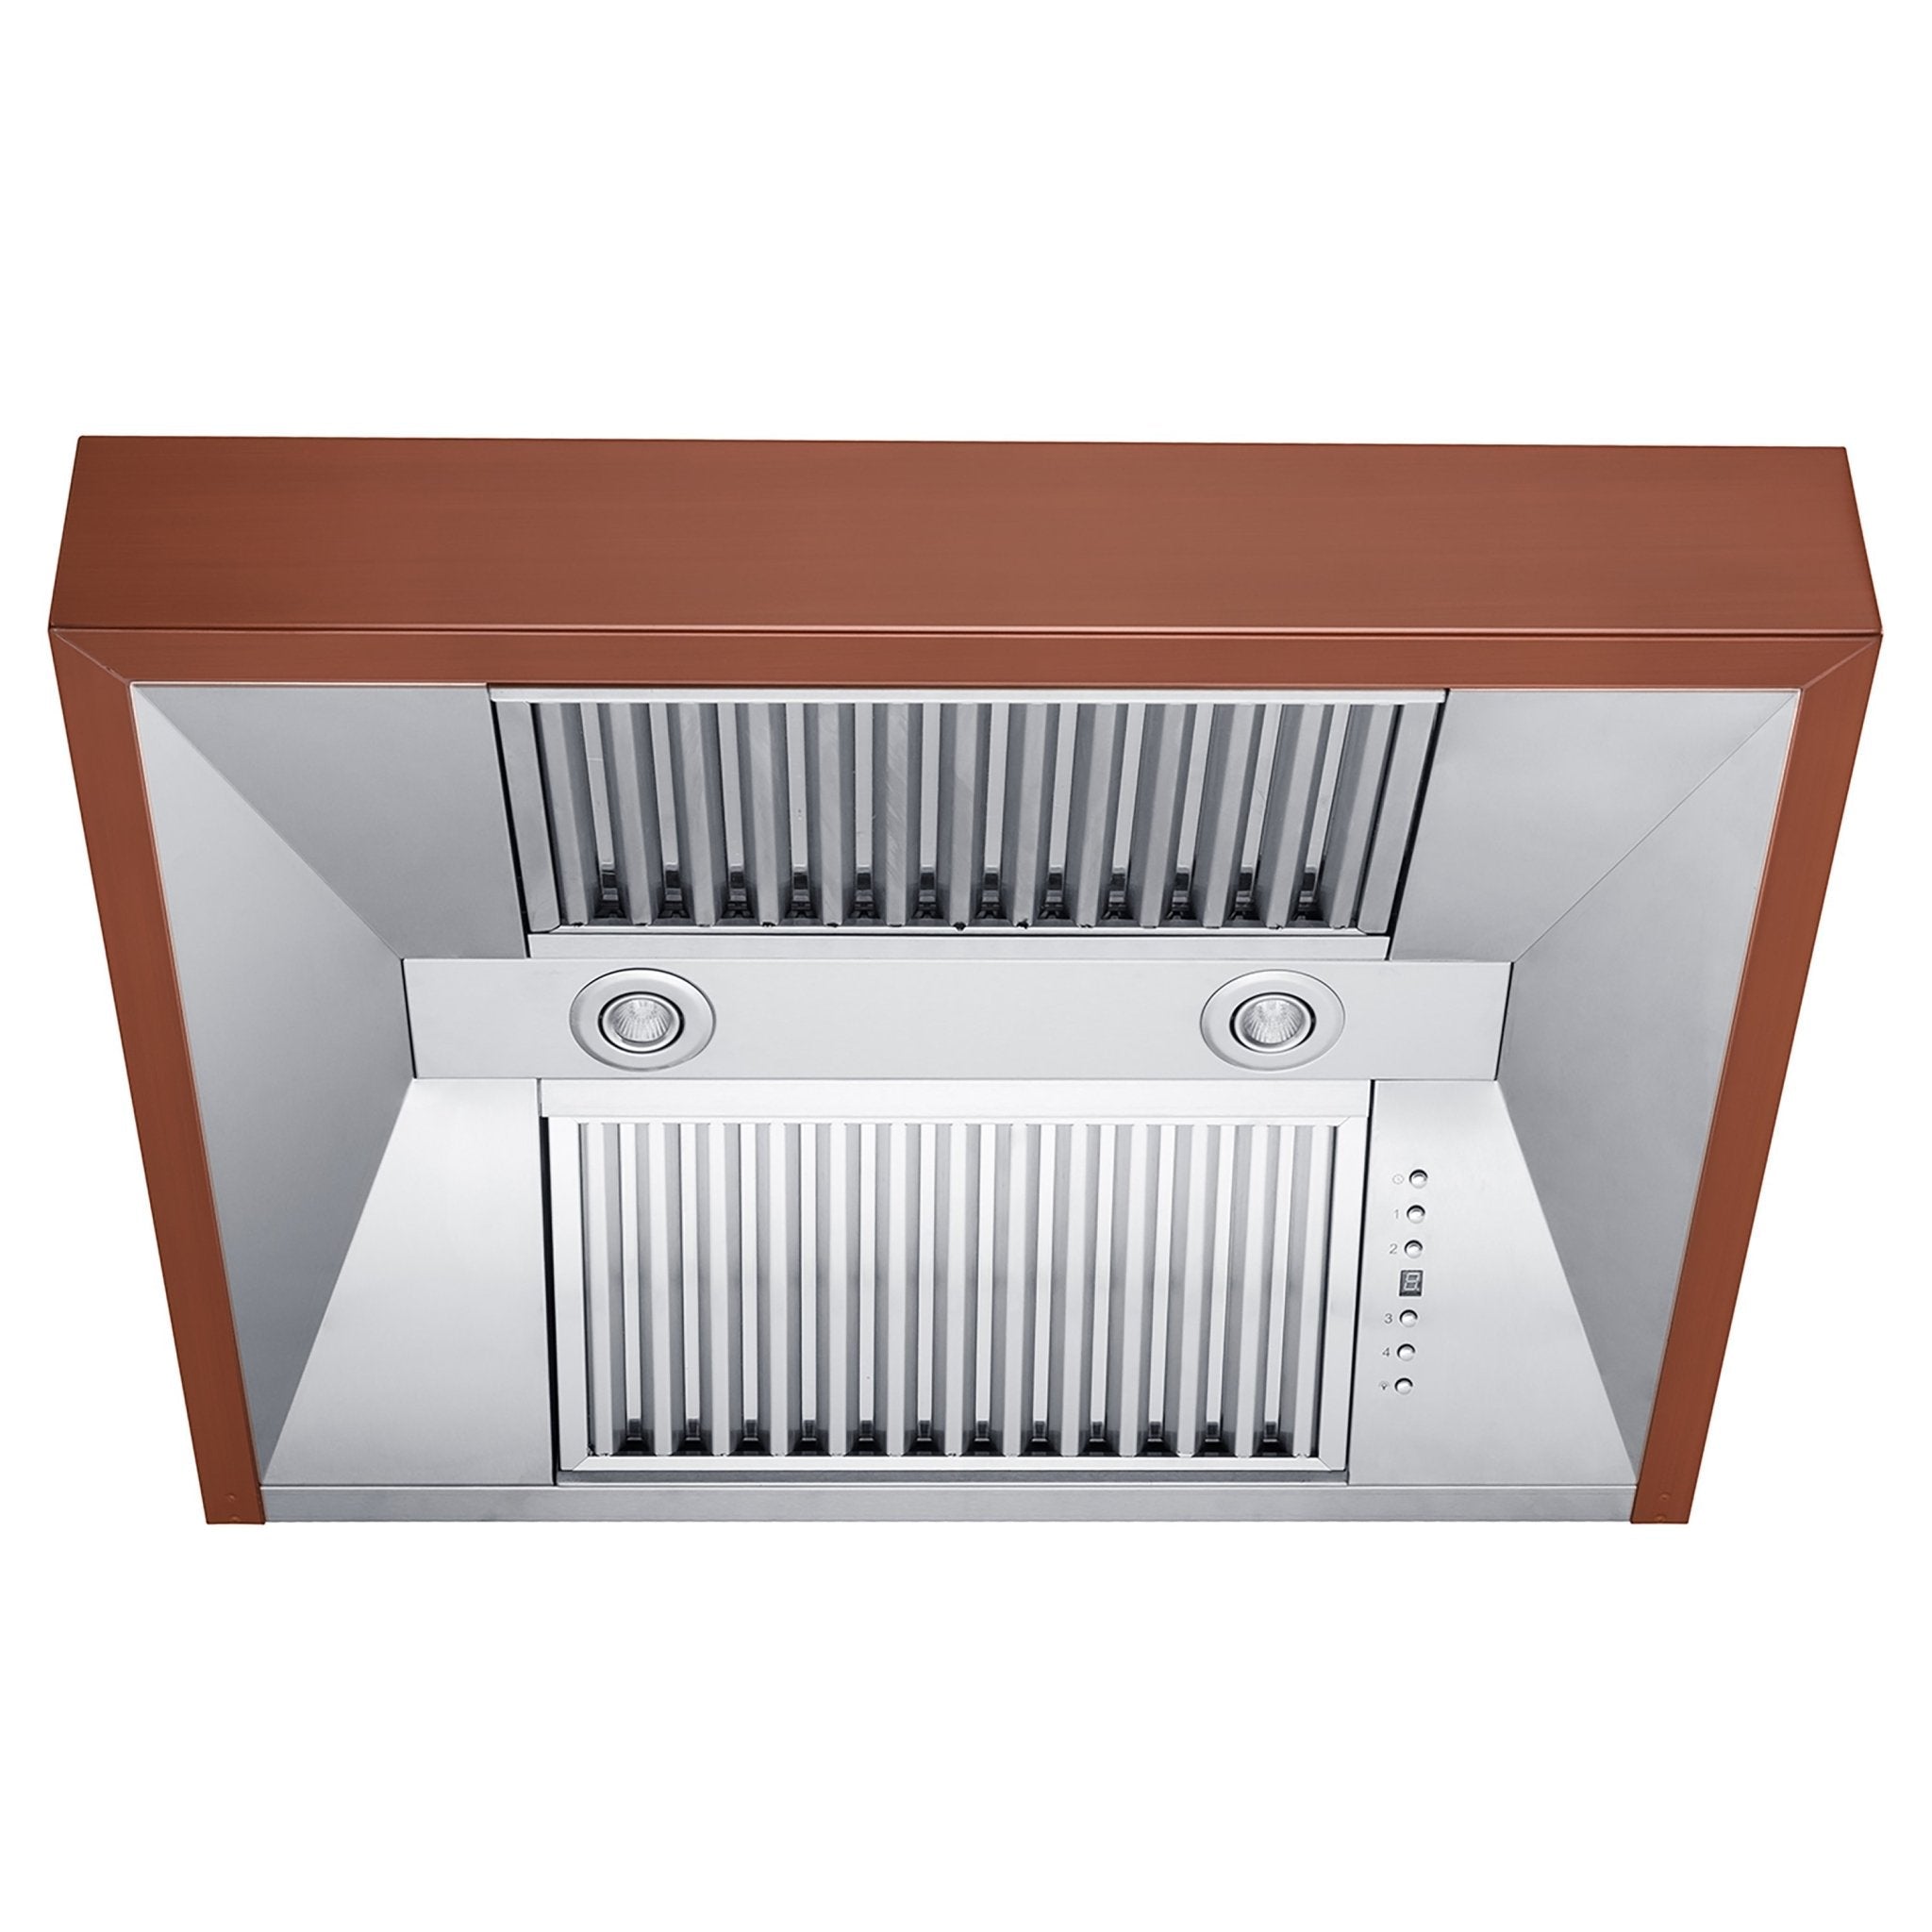 ZLINE Designer Series Under Cabinet Range Hood (8685C) under showing baffle filters, LED lighting, and button panel.